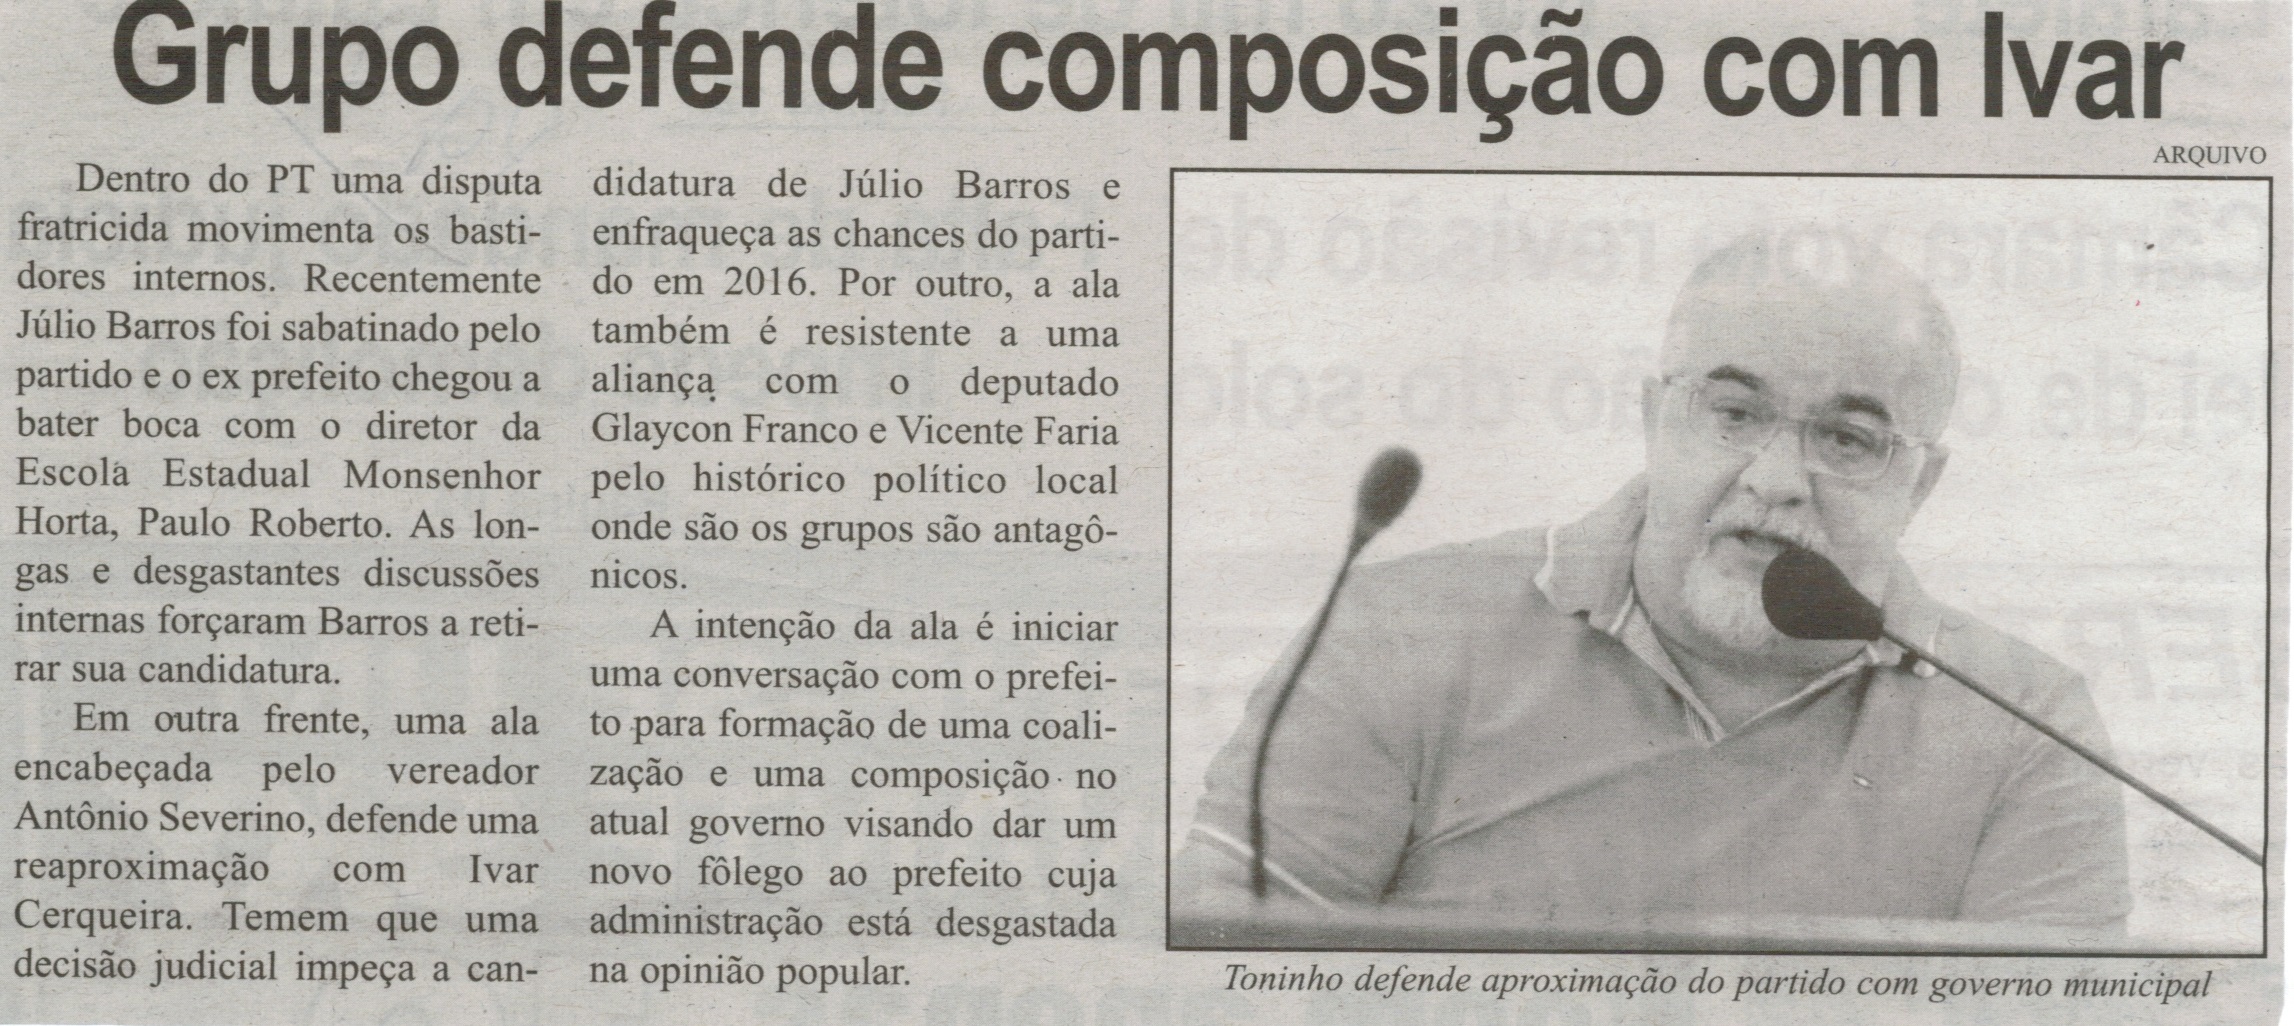 Grupo defende composição com Ivar. Correio de Minas, Conselheiro Lafaiete, 21 mar. 2015, p. 02.